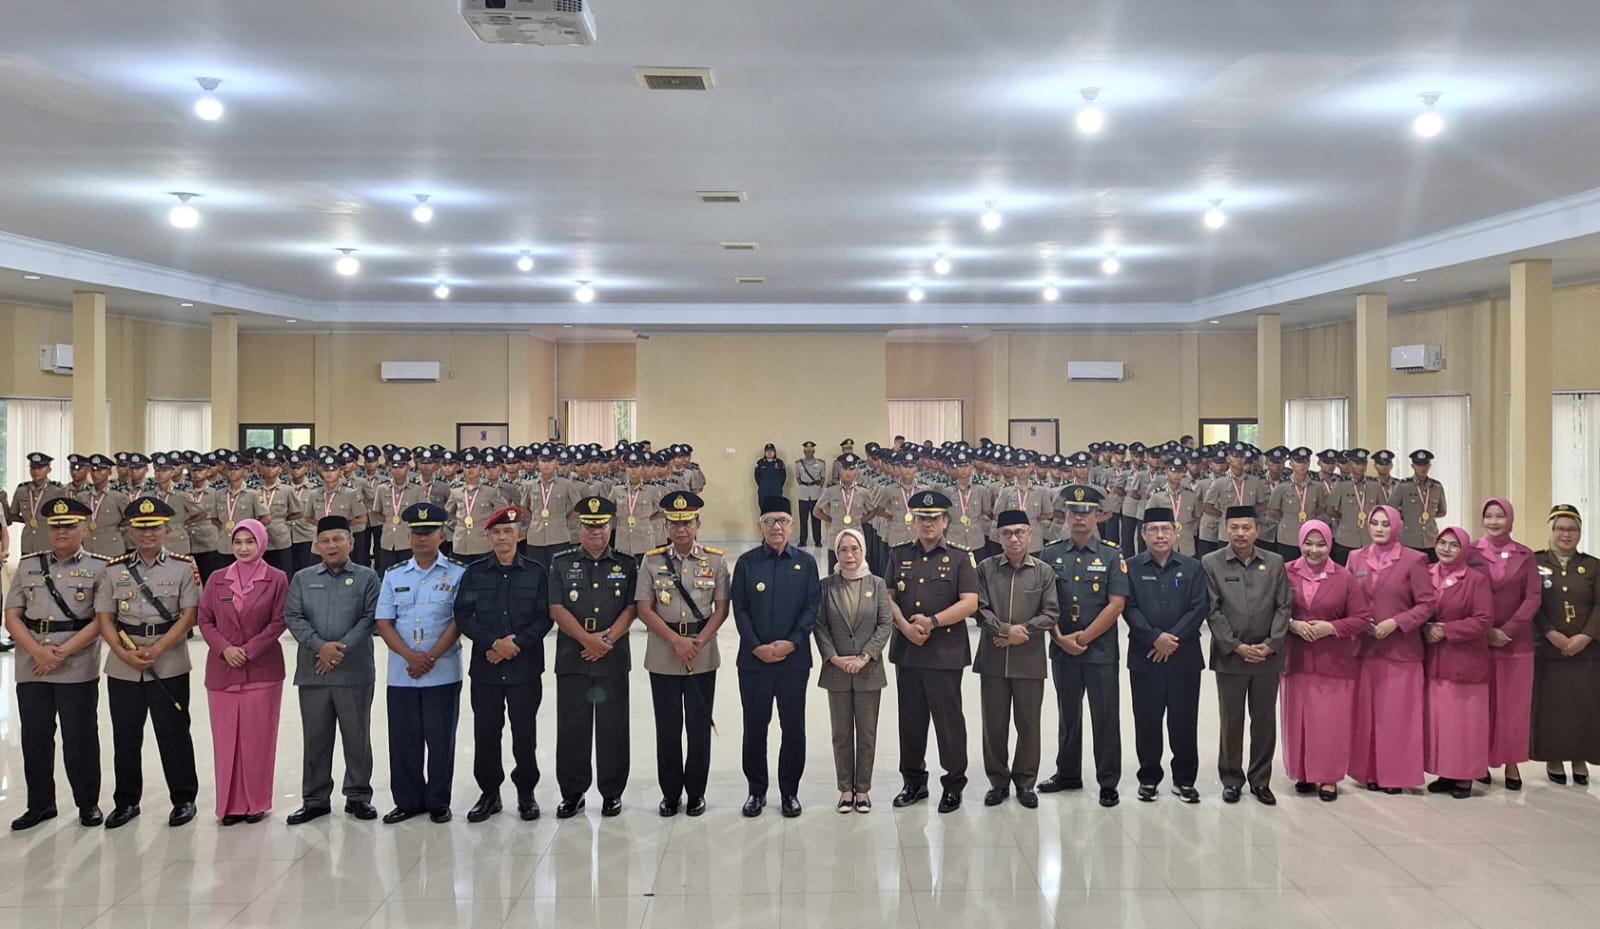  Kapolda Beri Kejutan Ulang Tahun ke Pj. Gubernur Gorontalo